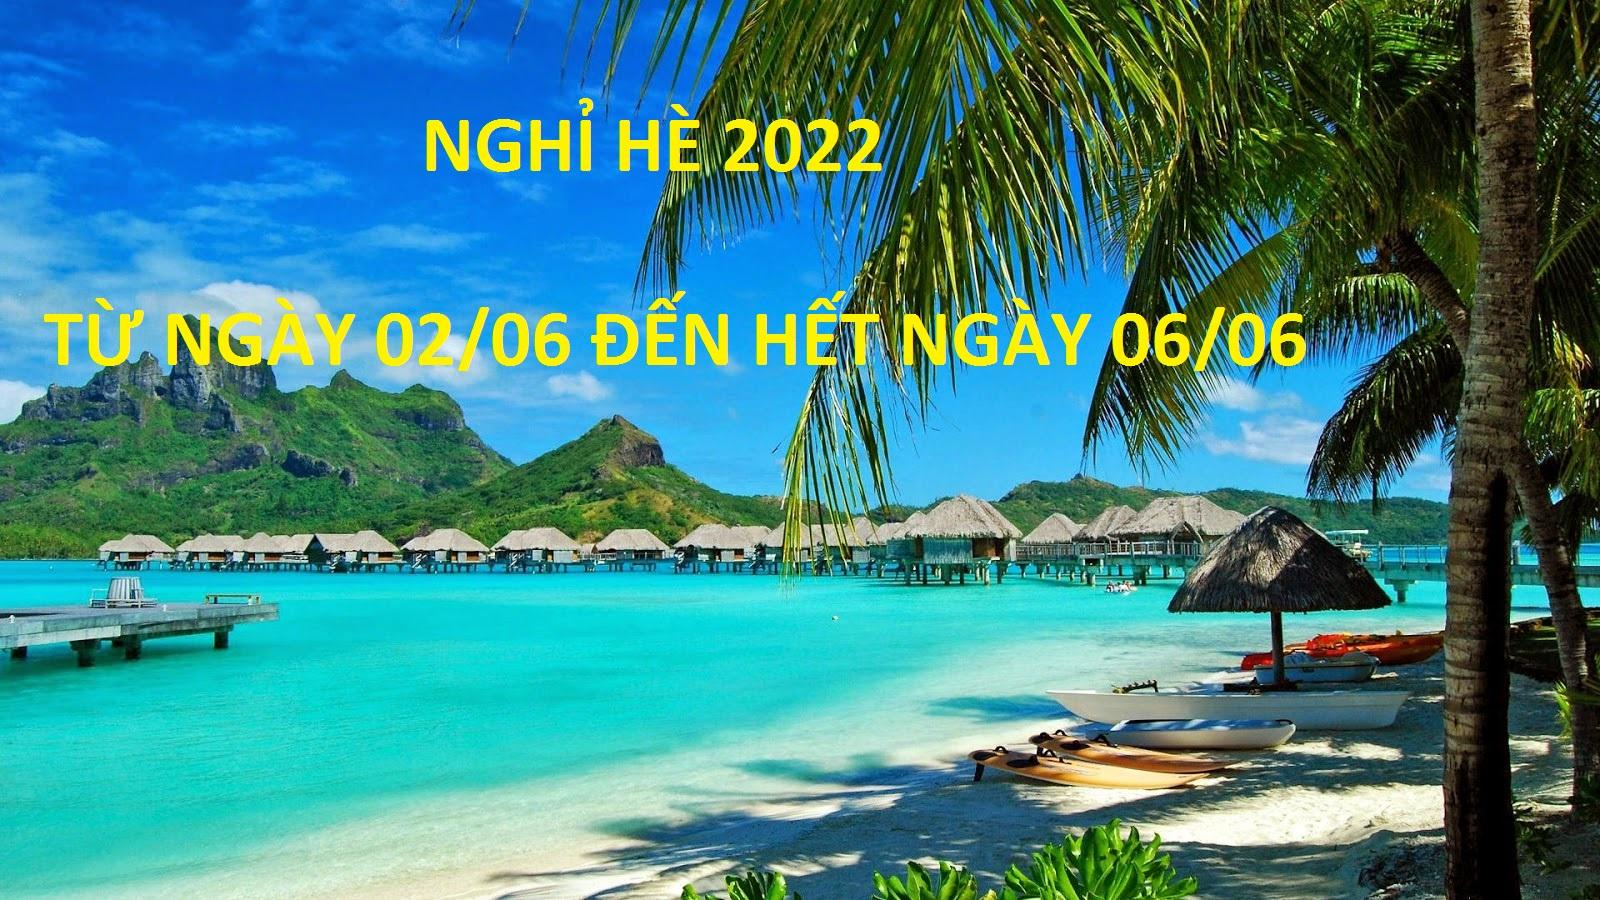 Thông báo nghỉ hè 2022